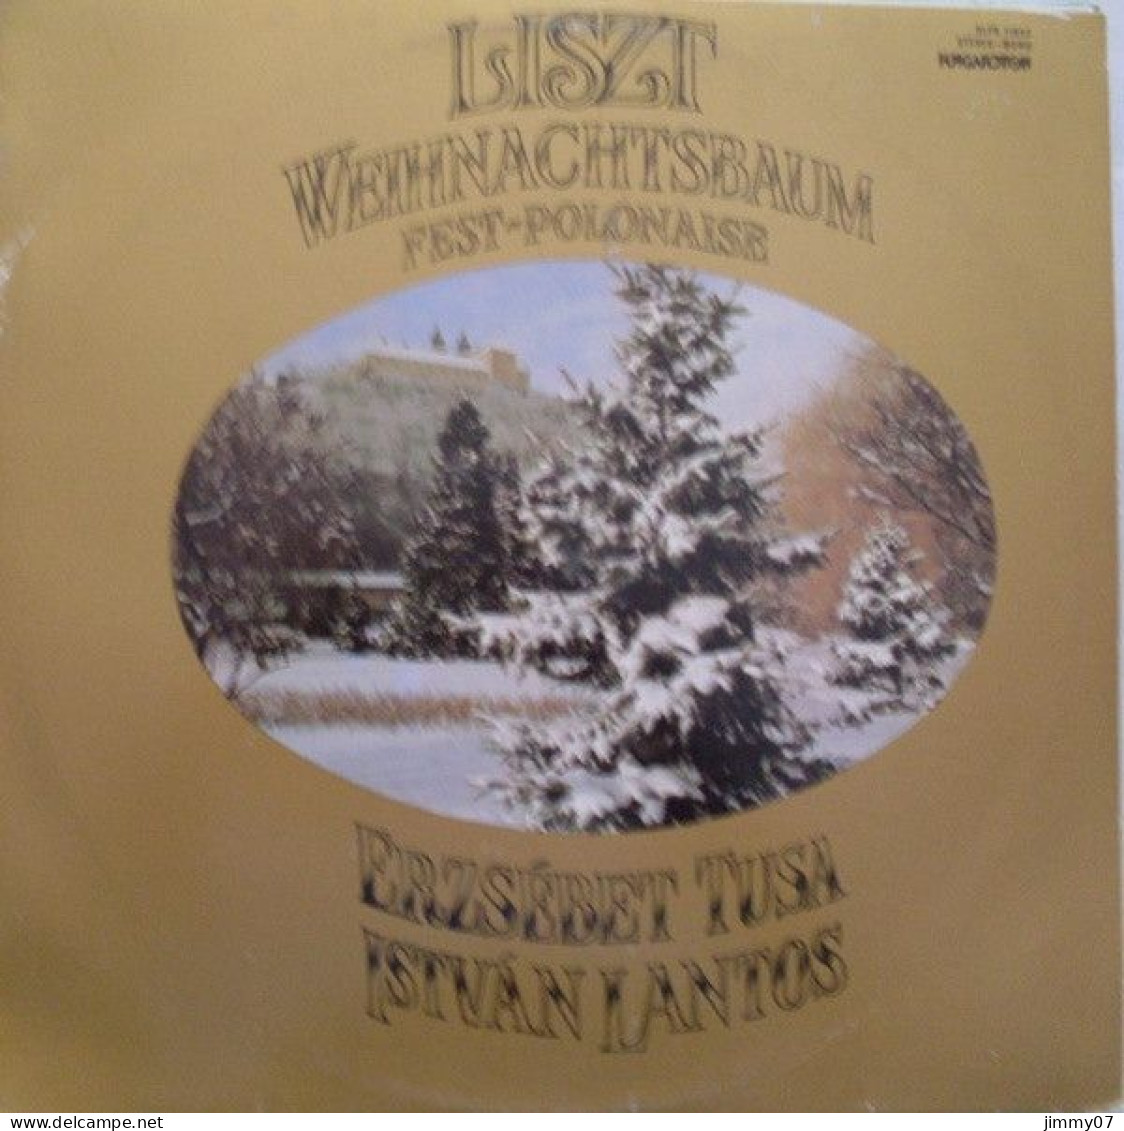 Franz Liszt, Erzsébet Tusa*, István Lantos* - Weihnachtsbaum - Fest-Polonaise (LP, Album) - Klassik